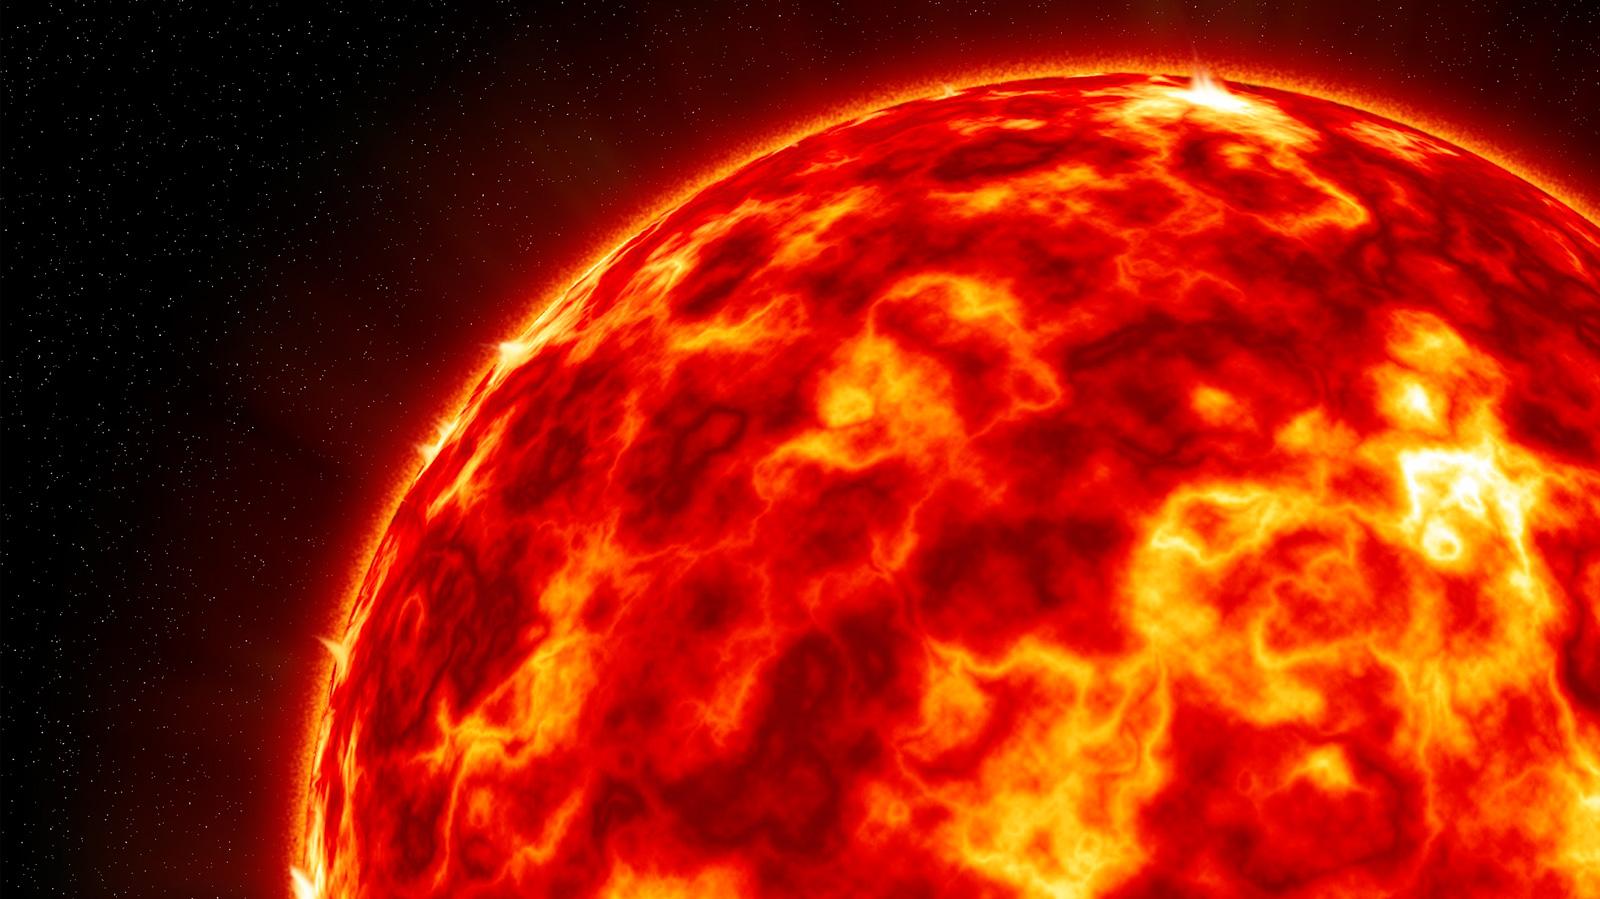 Académico del DFI lidera investigación que descubrió pistas claves sobre llamaradas solares